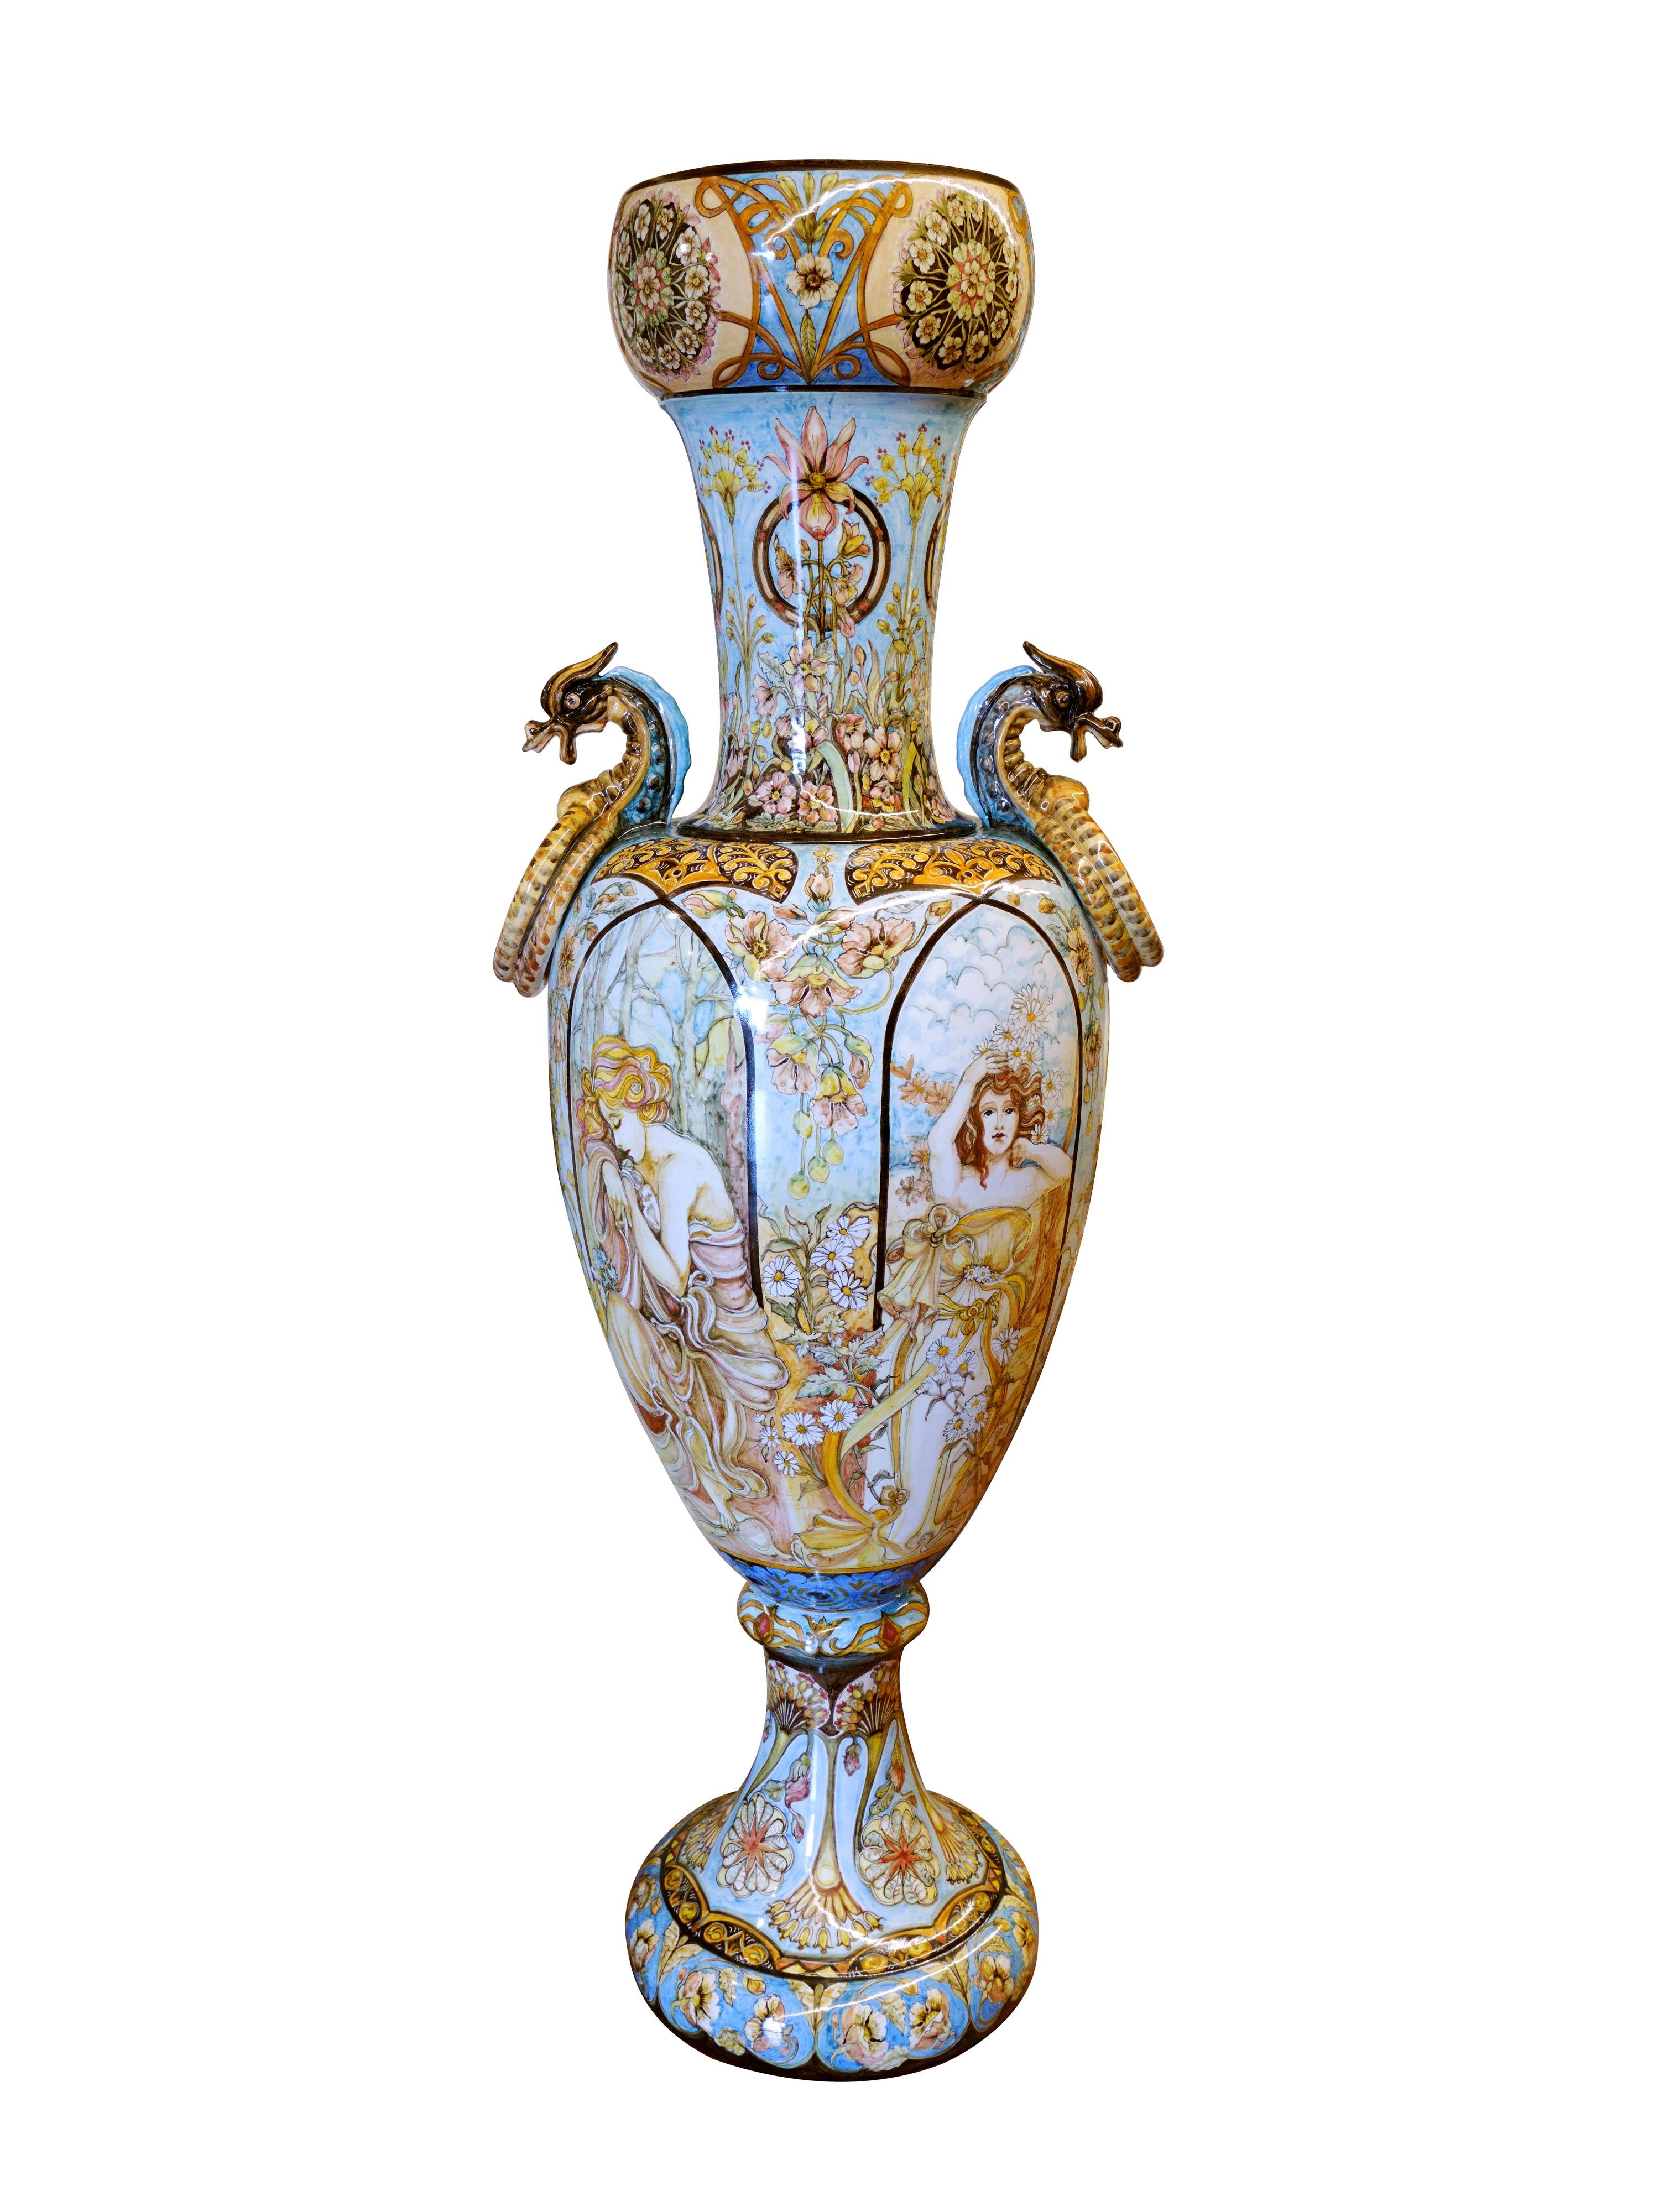 Majestätische Amphora aus glasierter Majolika, handgefertigt und handbemalt in Mittelitalien. Auf der Amphora sind sehr detailliert die vier Jahreszeiten dargestellt, die von anmutigen Frauen verkörpert werden, die von floralen Elementen umgeben